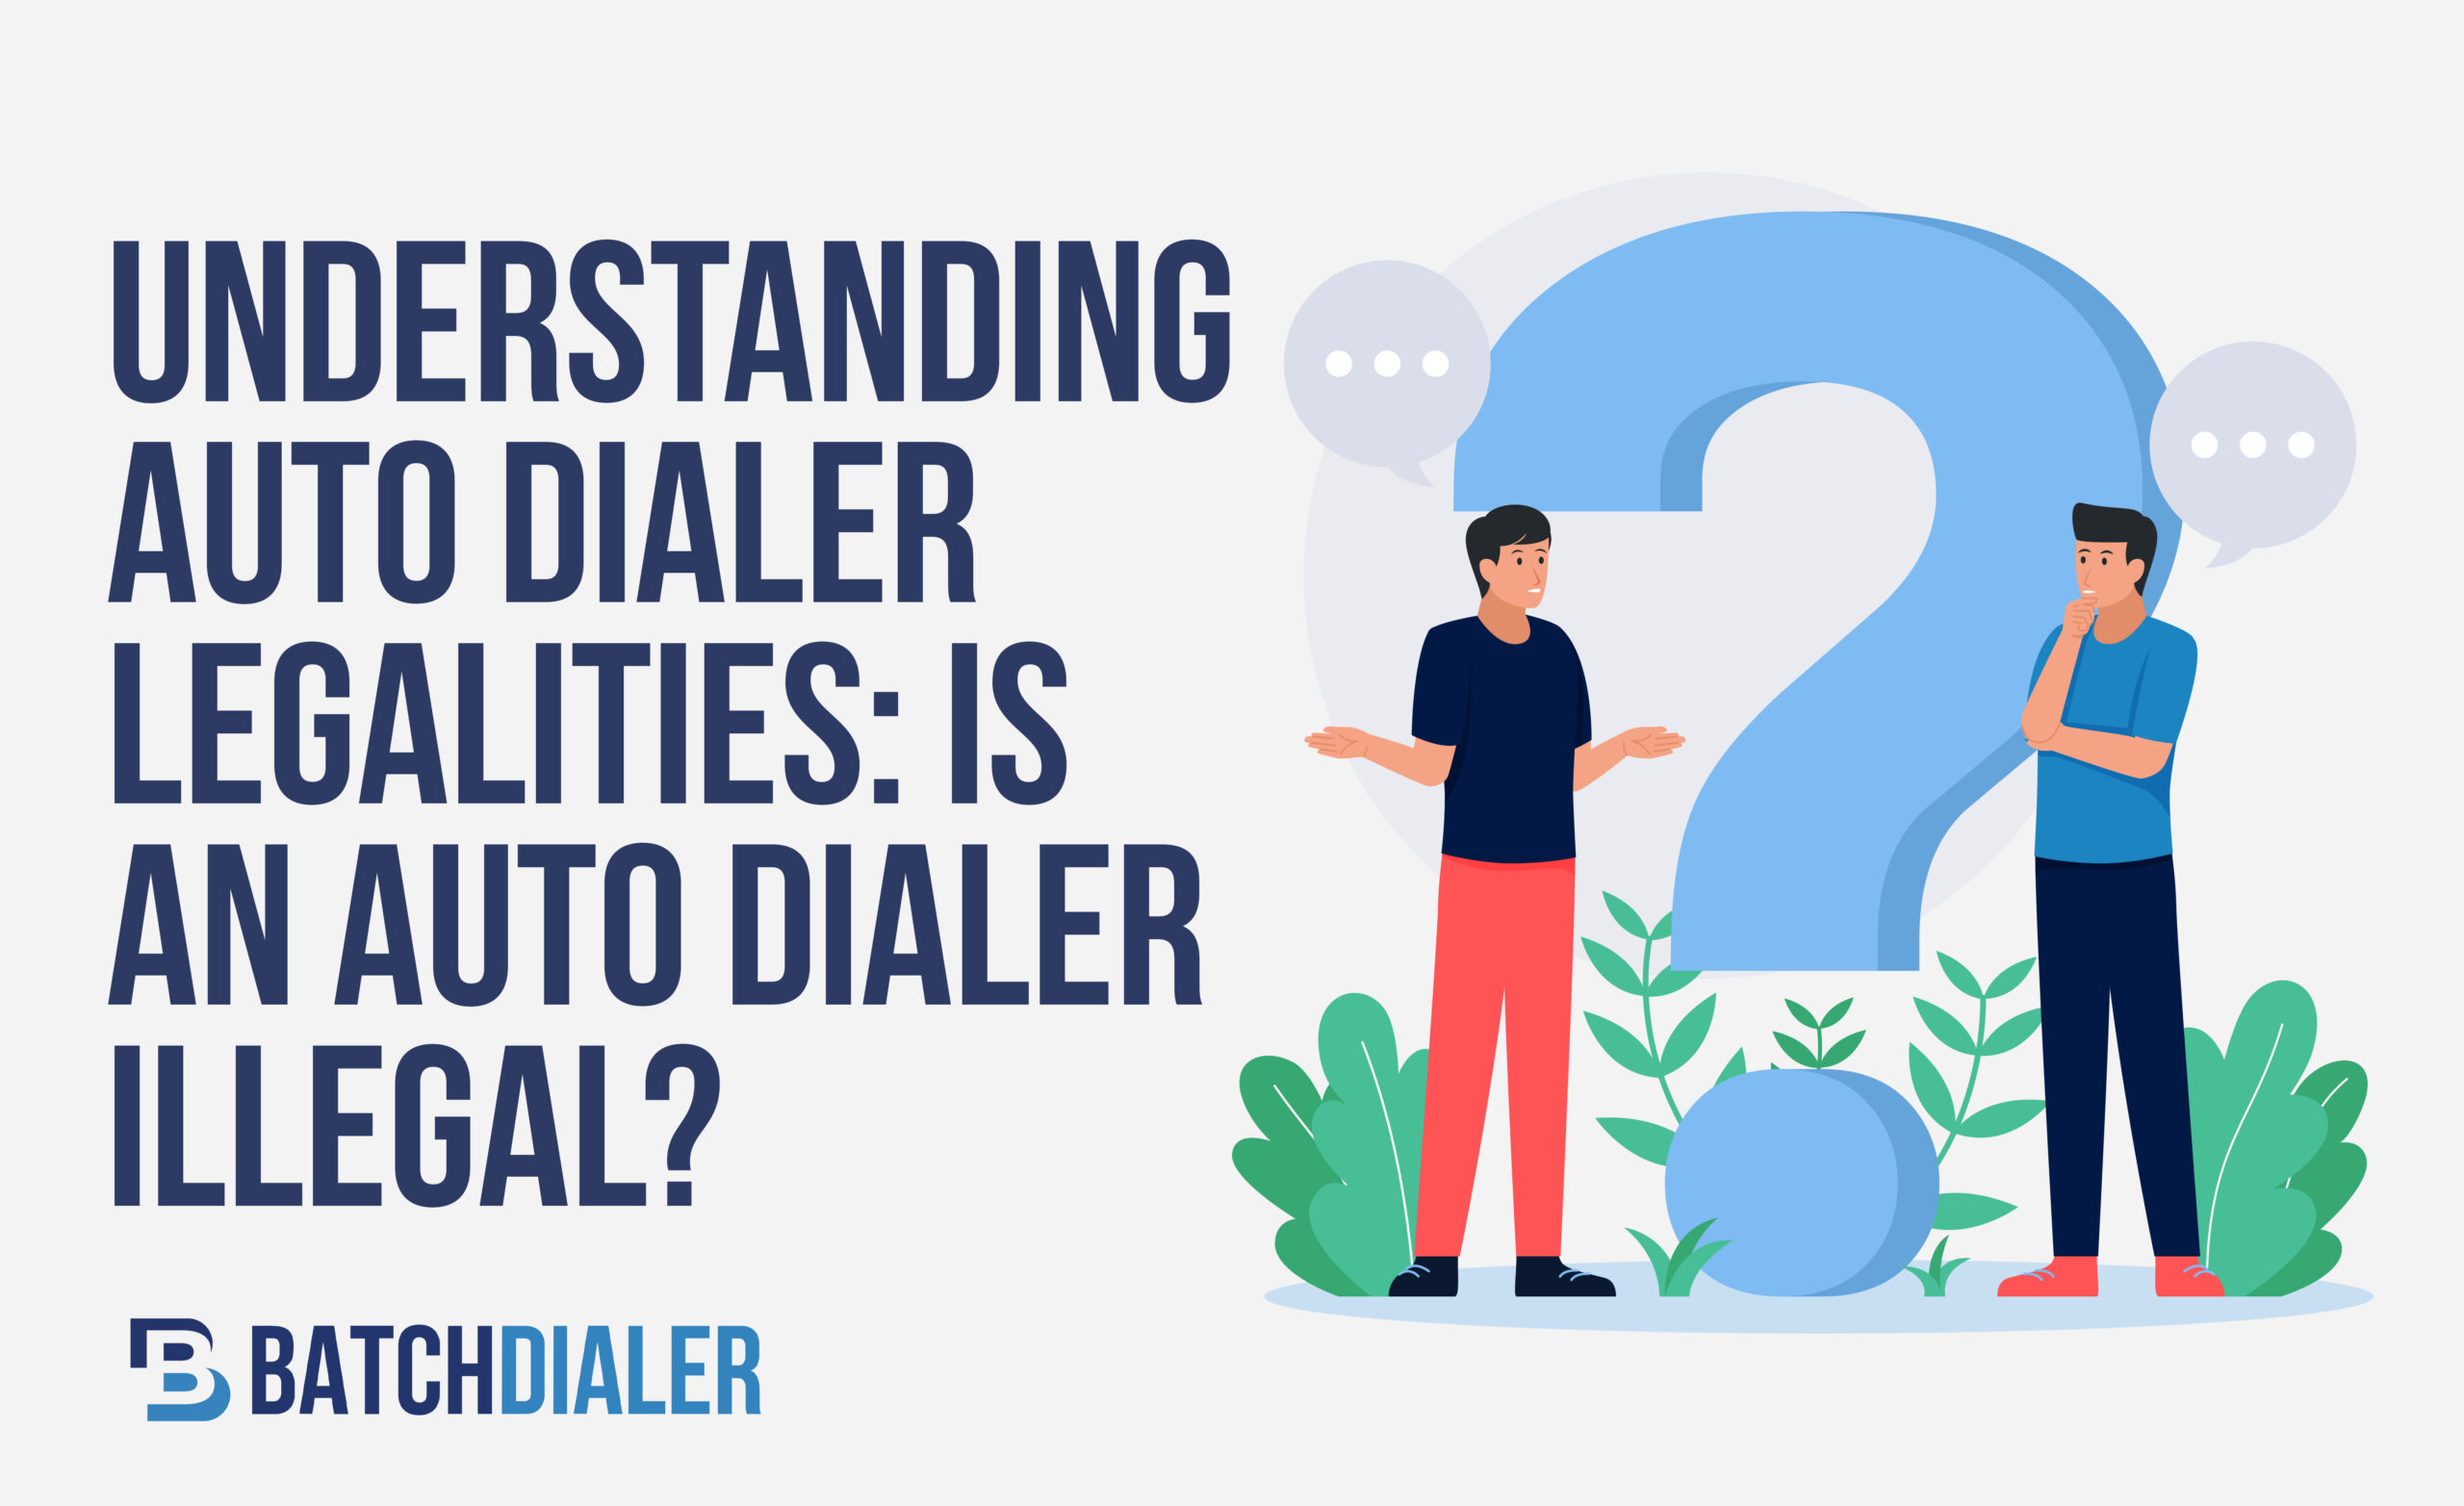 Understanding Auto Dialer Legalities Is An Auto Dialer Illegal